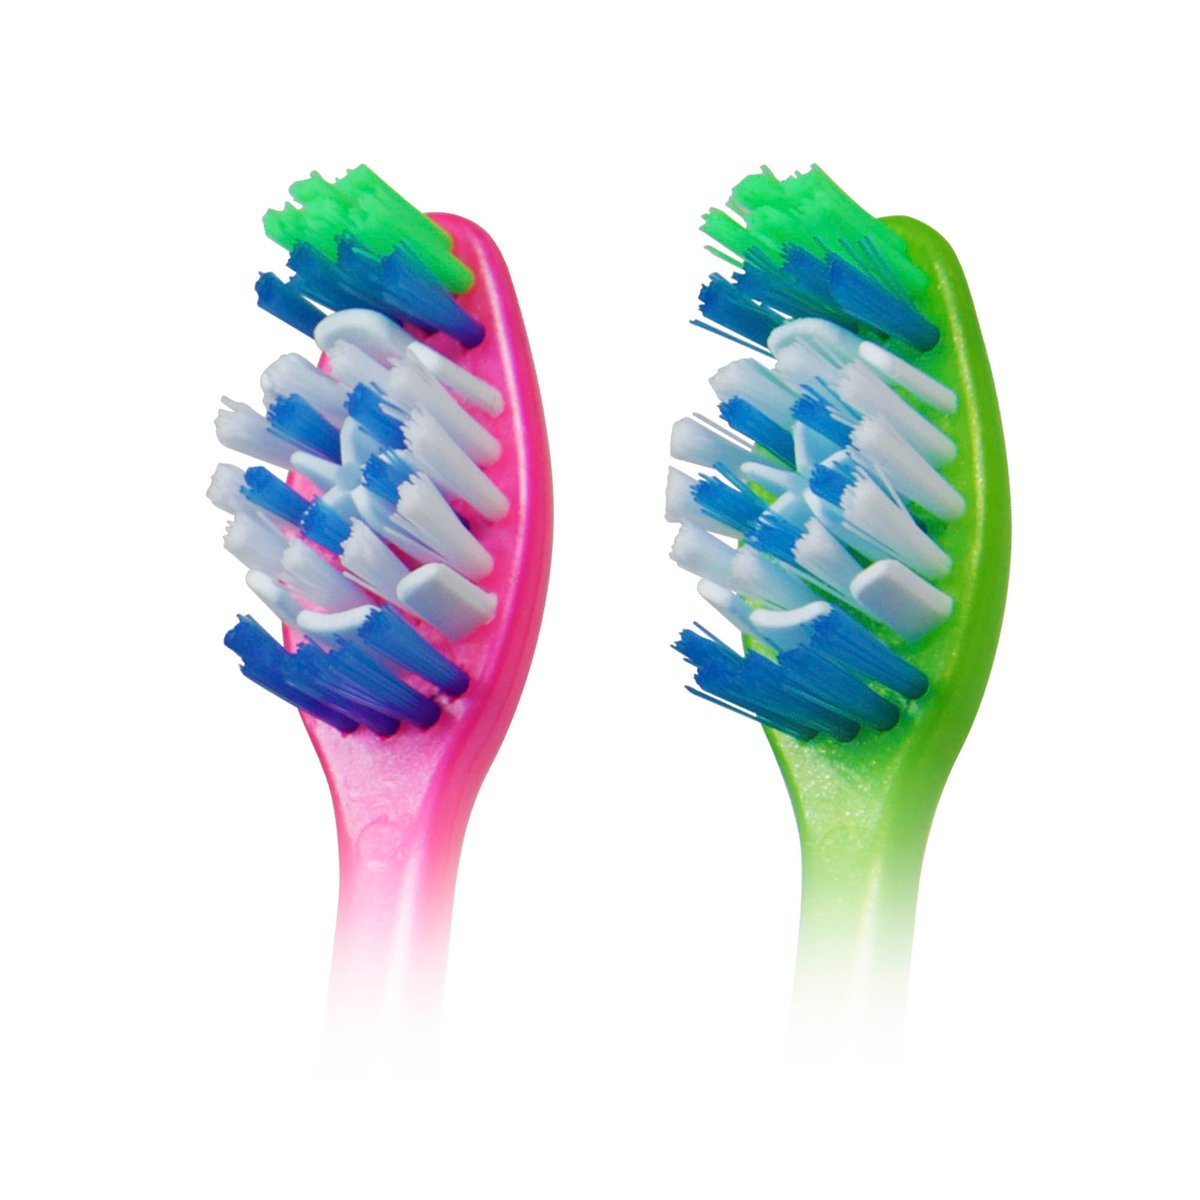 كولجيت فرشاة أسنان ماكس وايت متوسطة بألوان متنوعة عرض التوفير حبتين